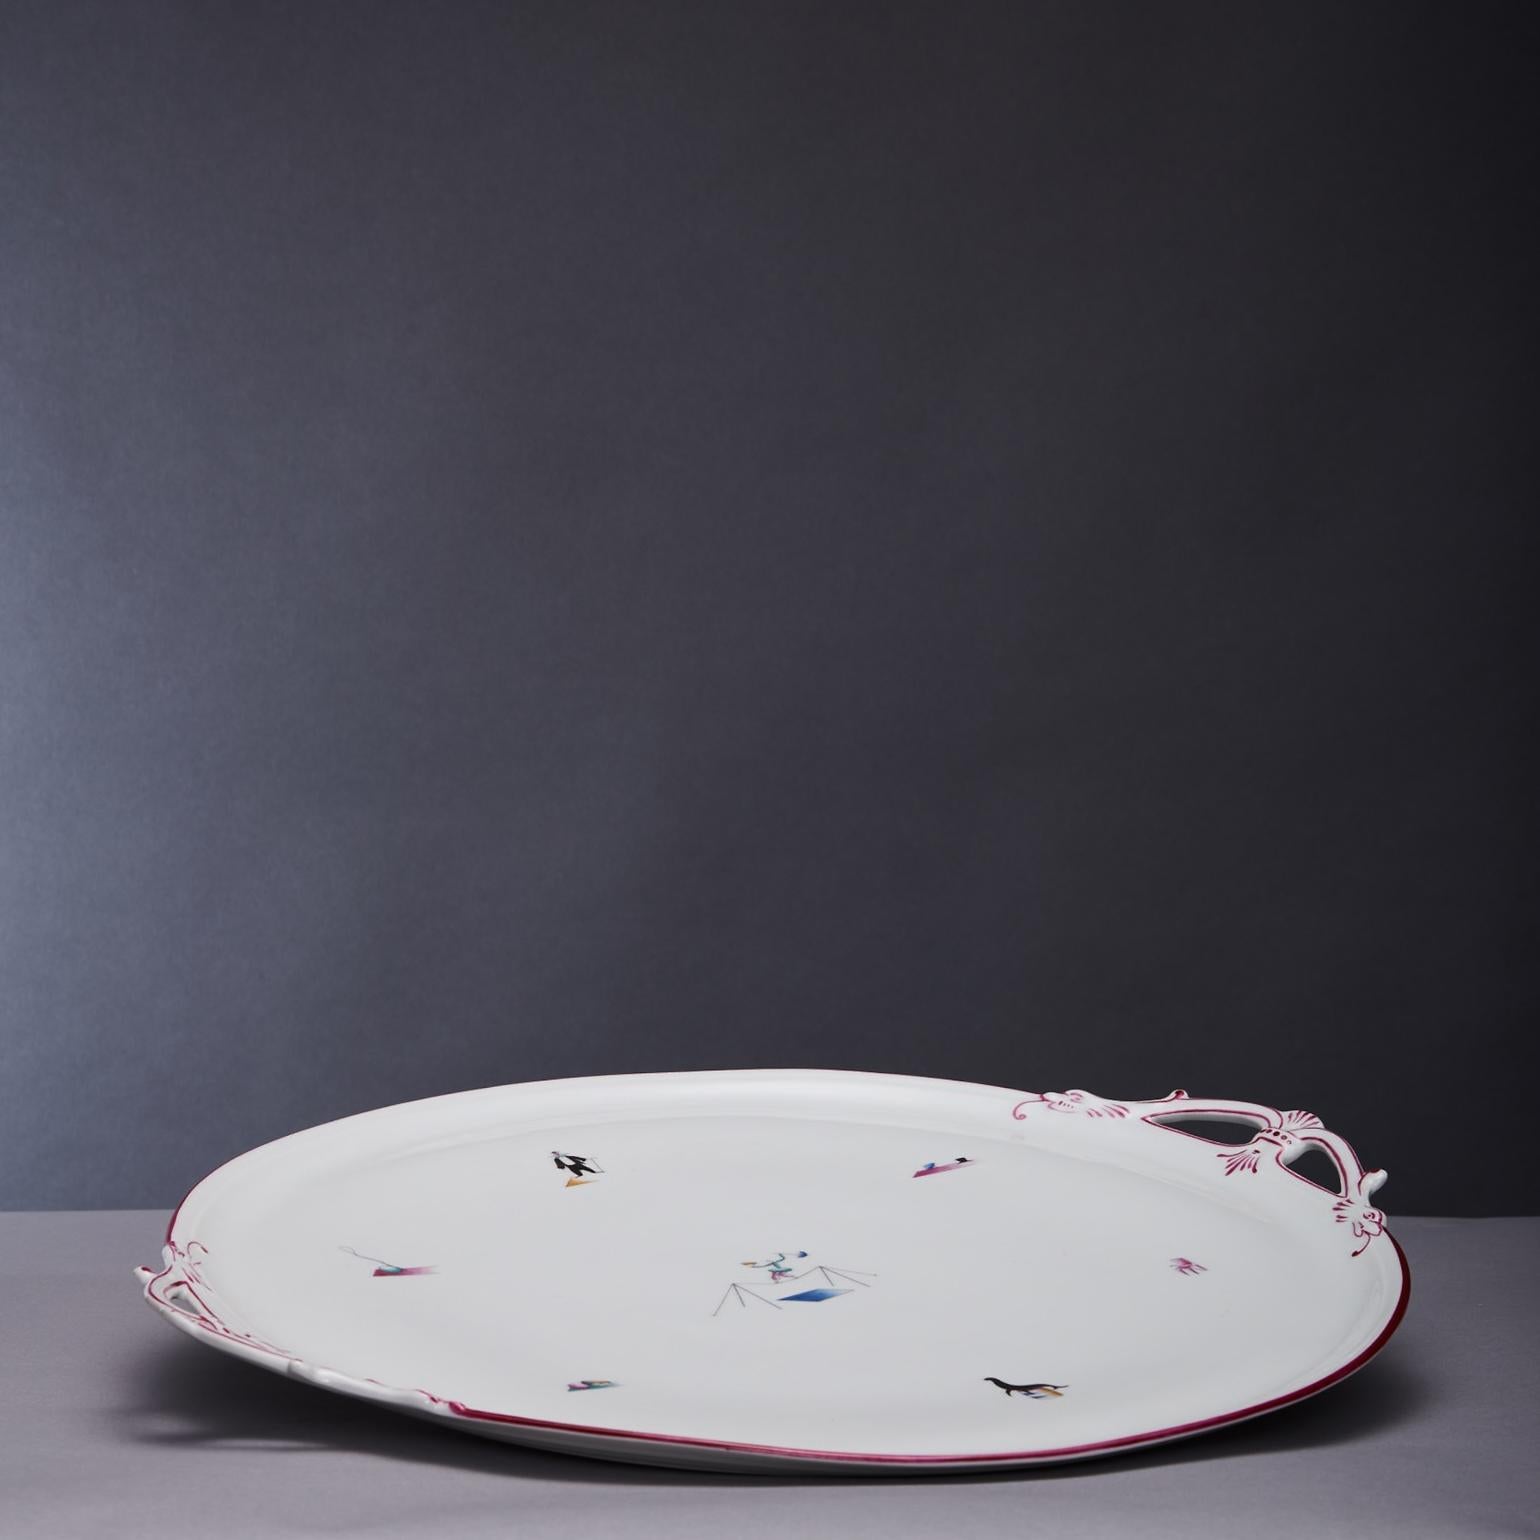 Porcelain Gio Ponti porcelain 'Il Circo' Platter for Richard Ginori, Italy, 1934